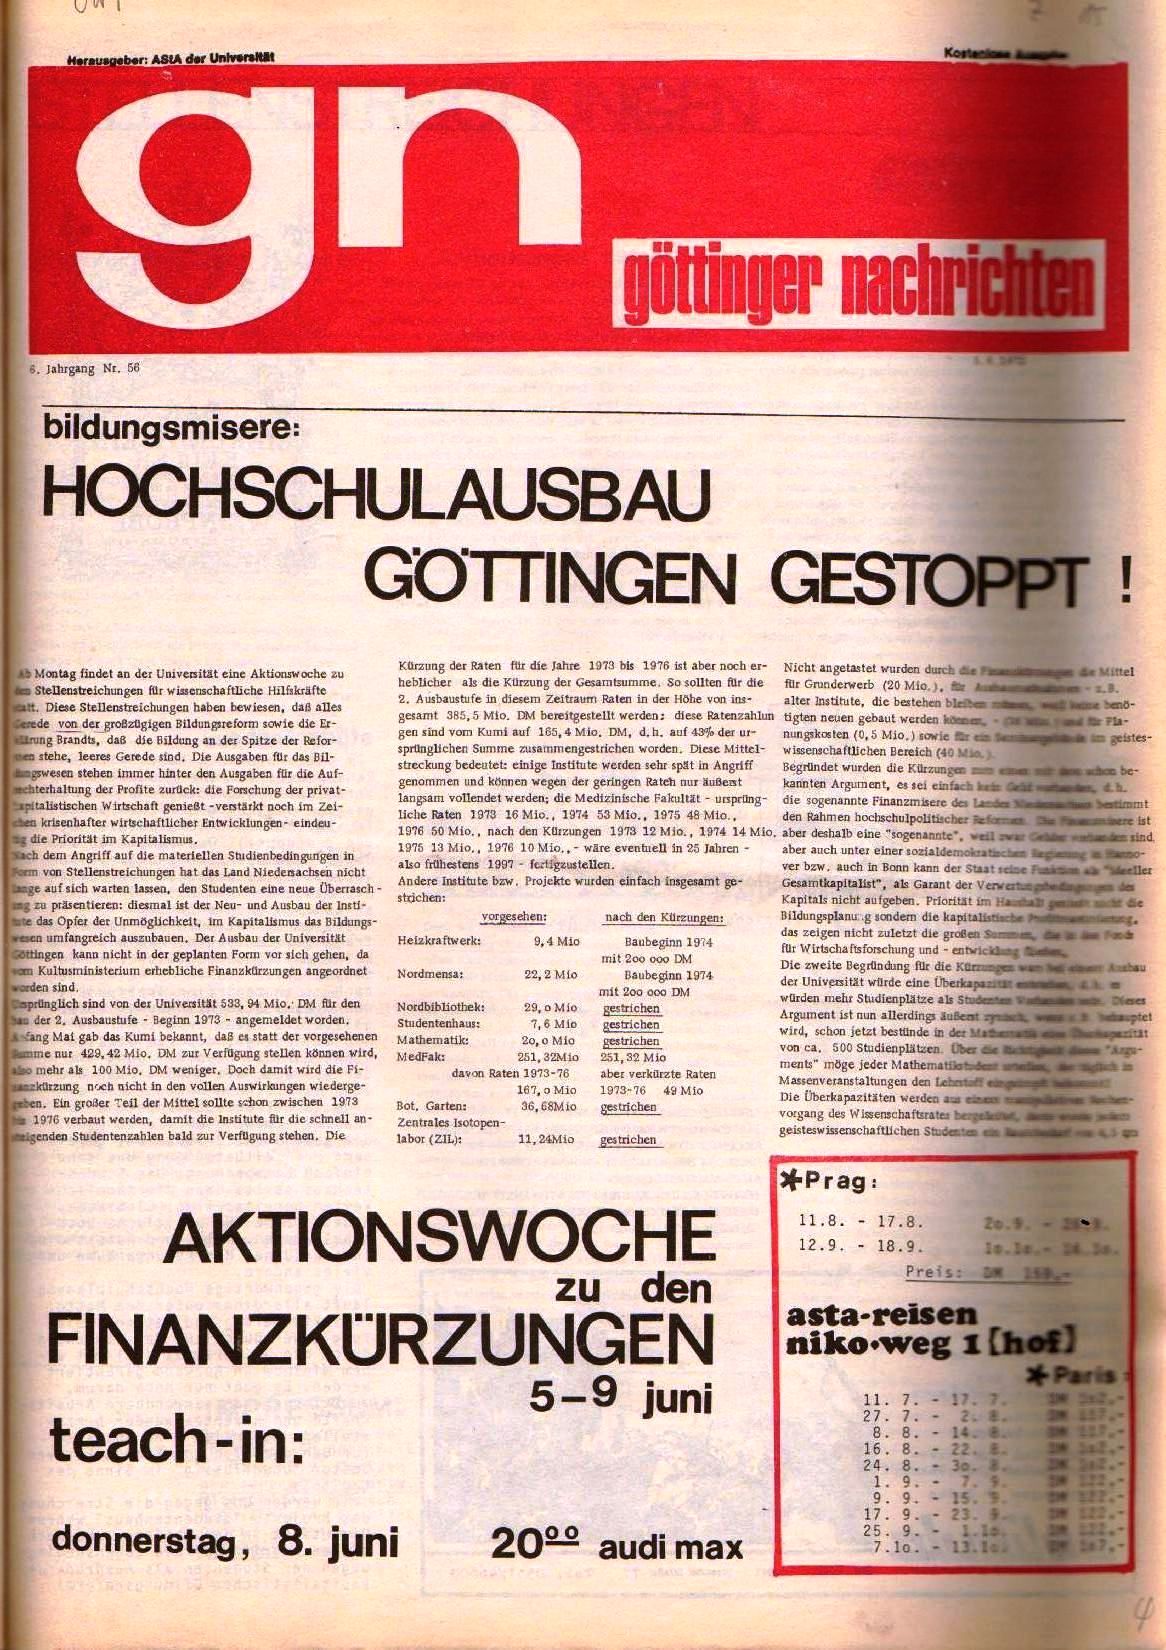 Goettinger_Nachrichten337